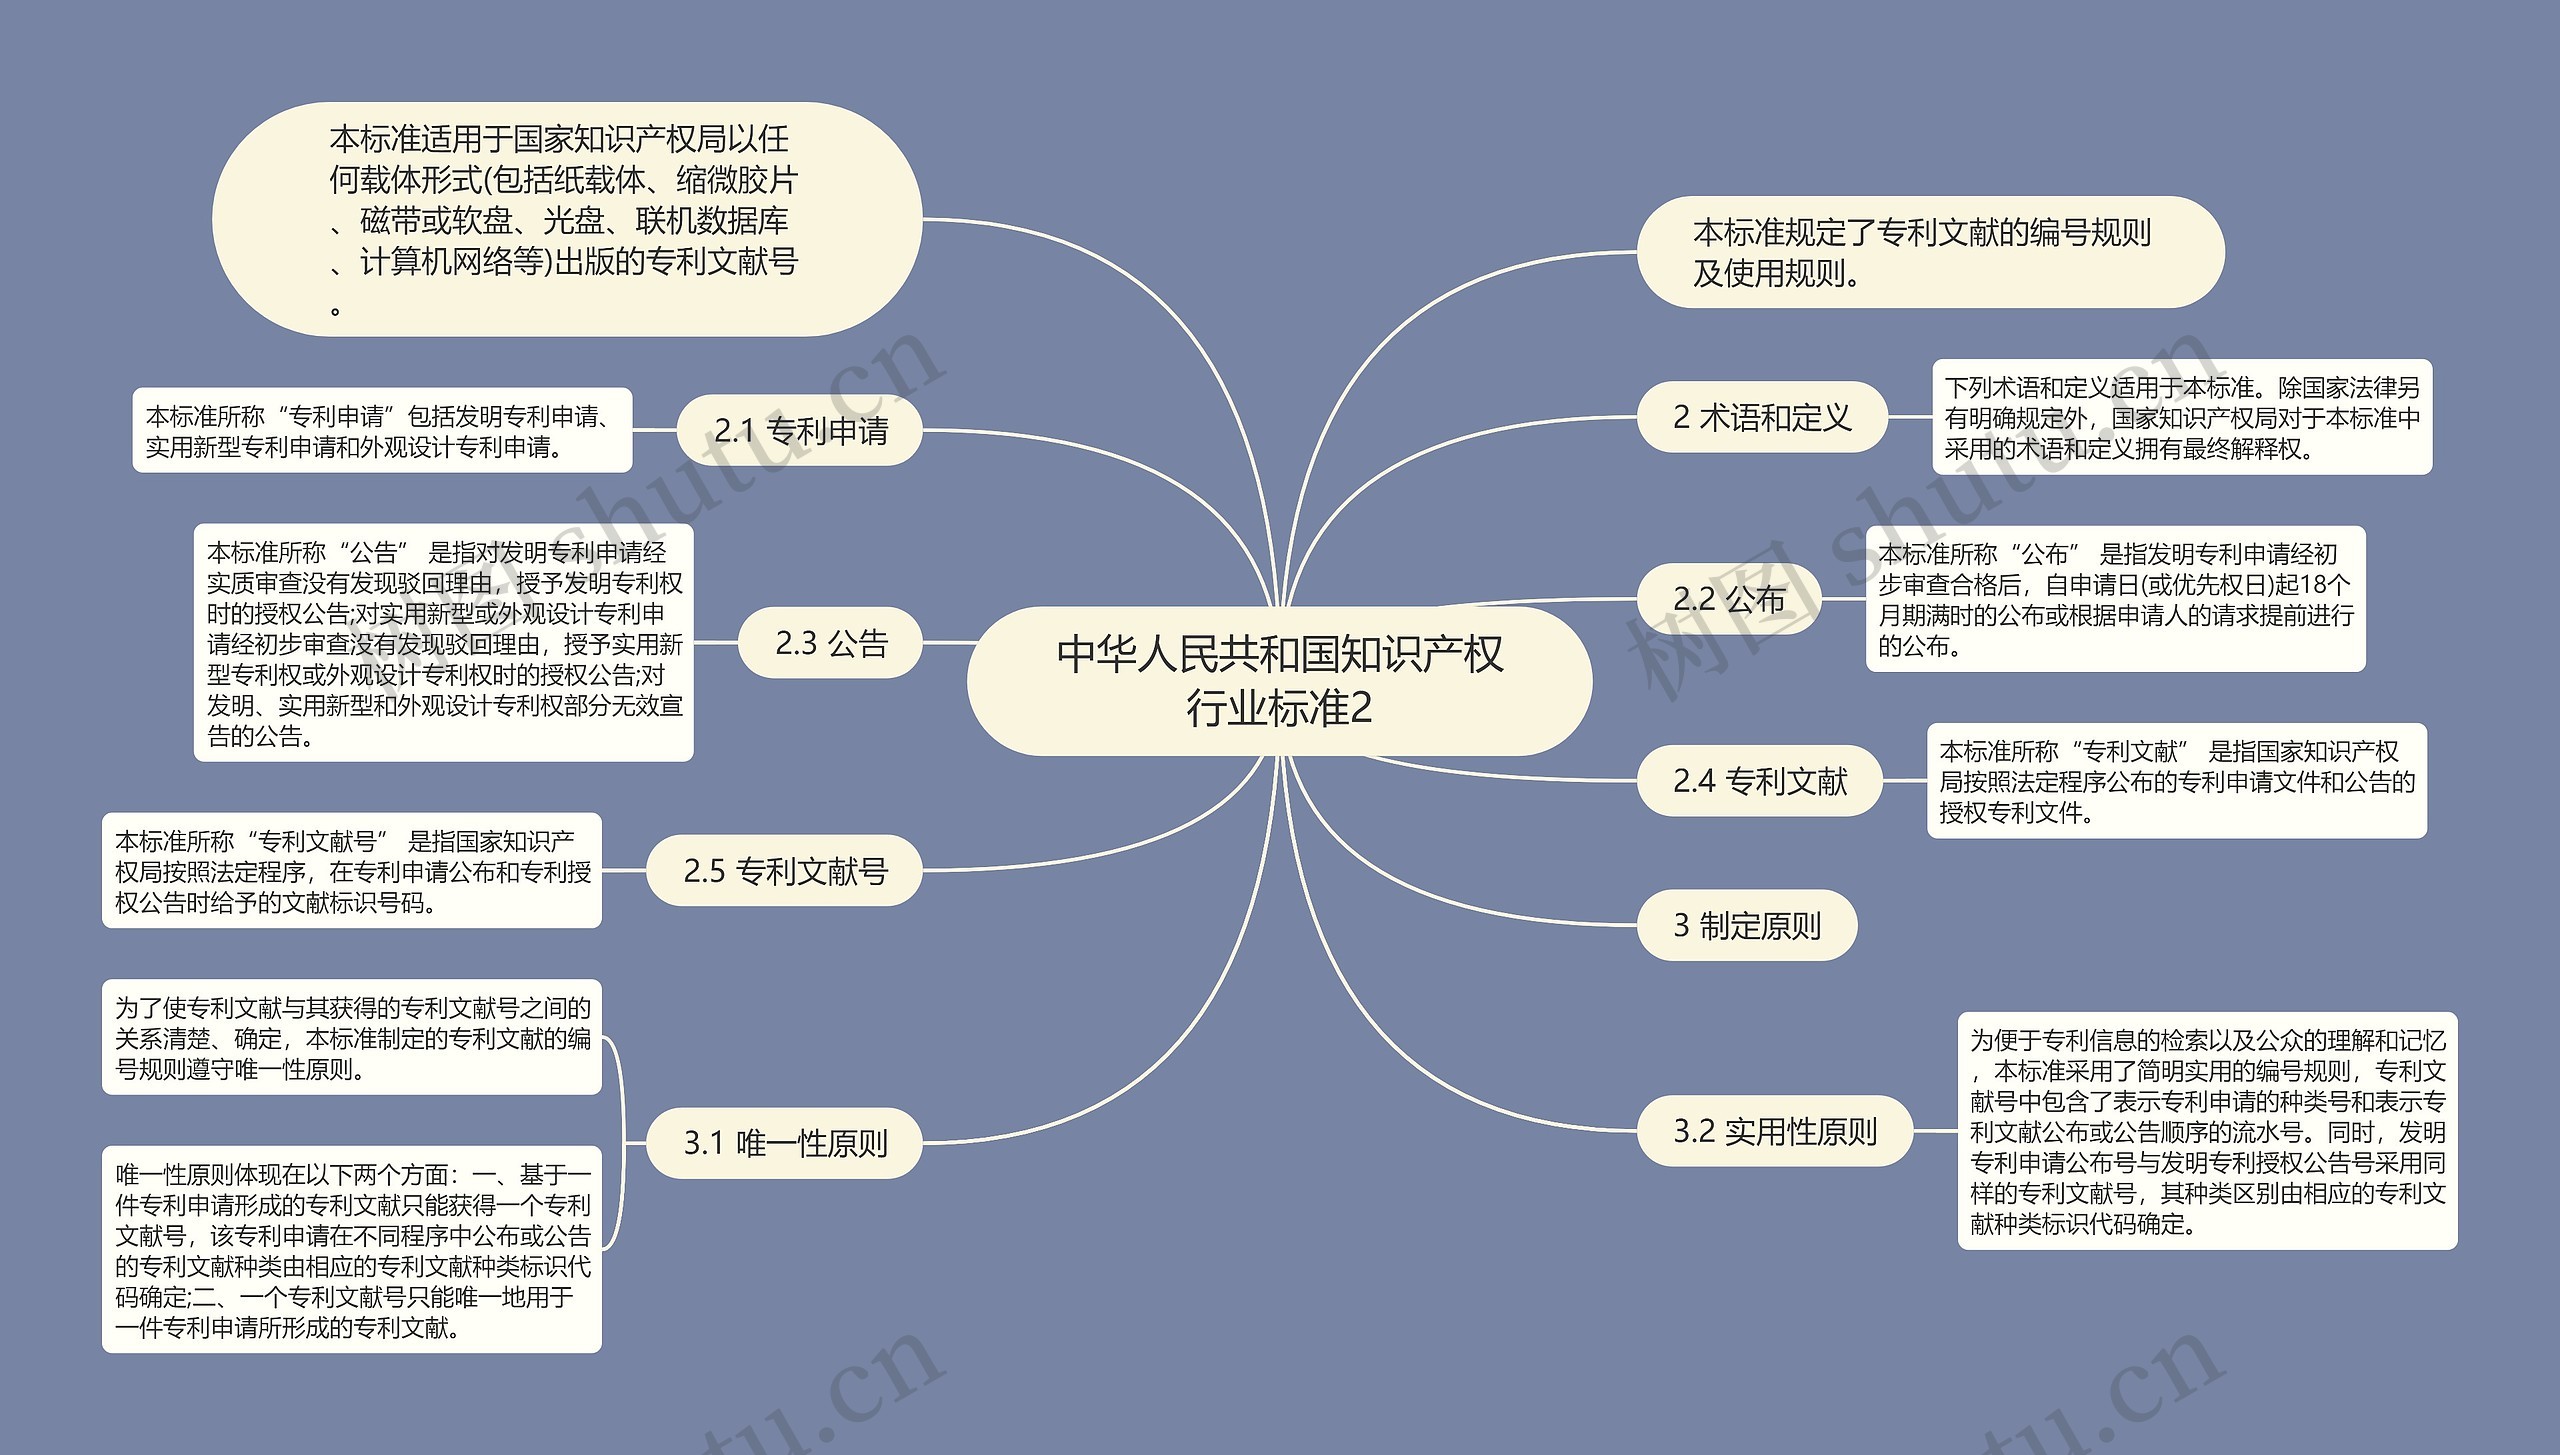 中华人民共和国知识产权行业标准2